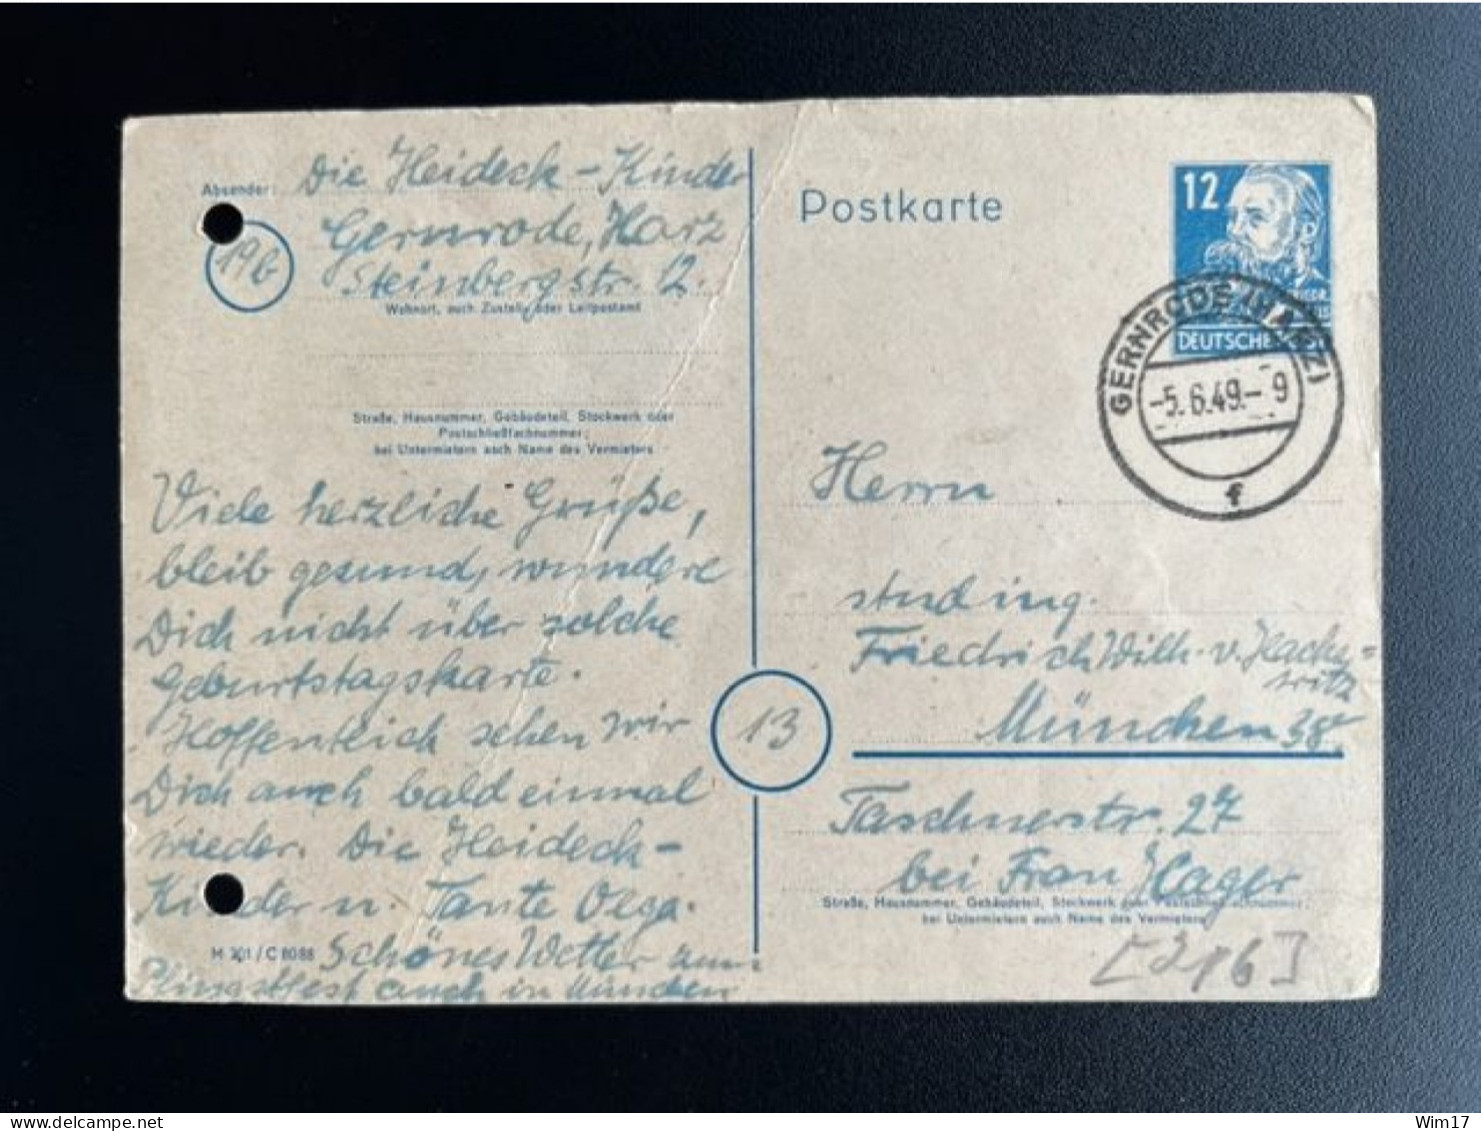 GERMANY 1949 POSTCARD GERNRODE TO MUNCHEN 05-06-1949 DUITSLAND DEUTSCHLAND - Entiers Postaux